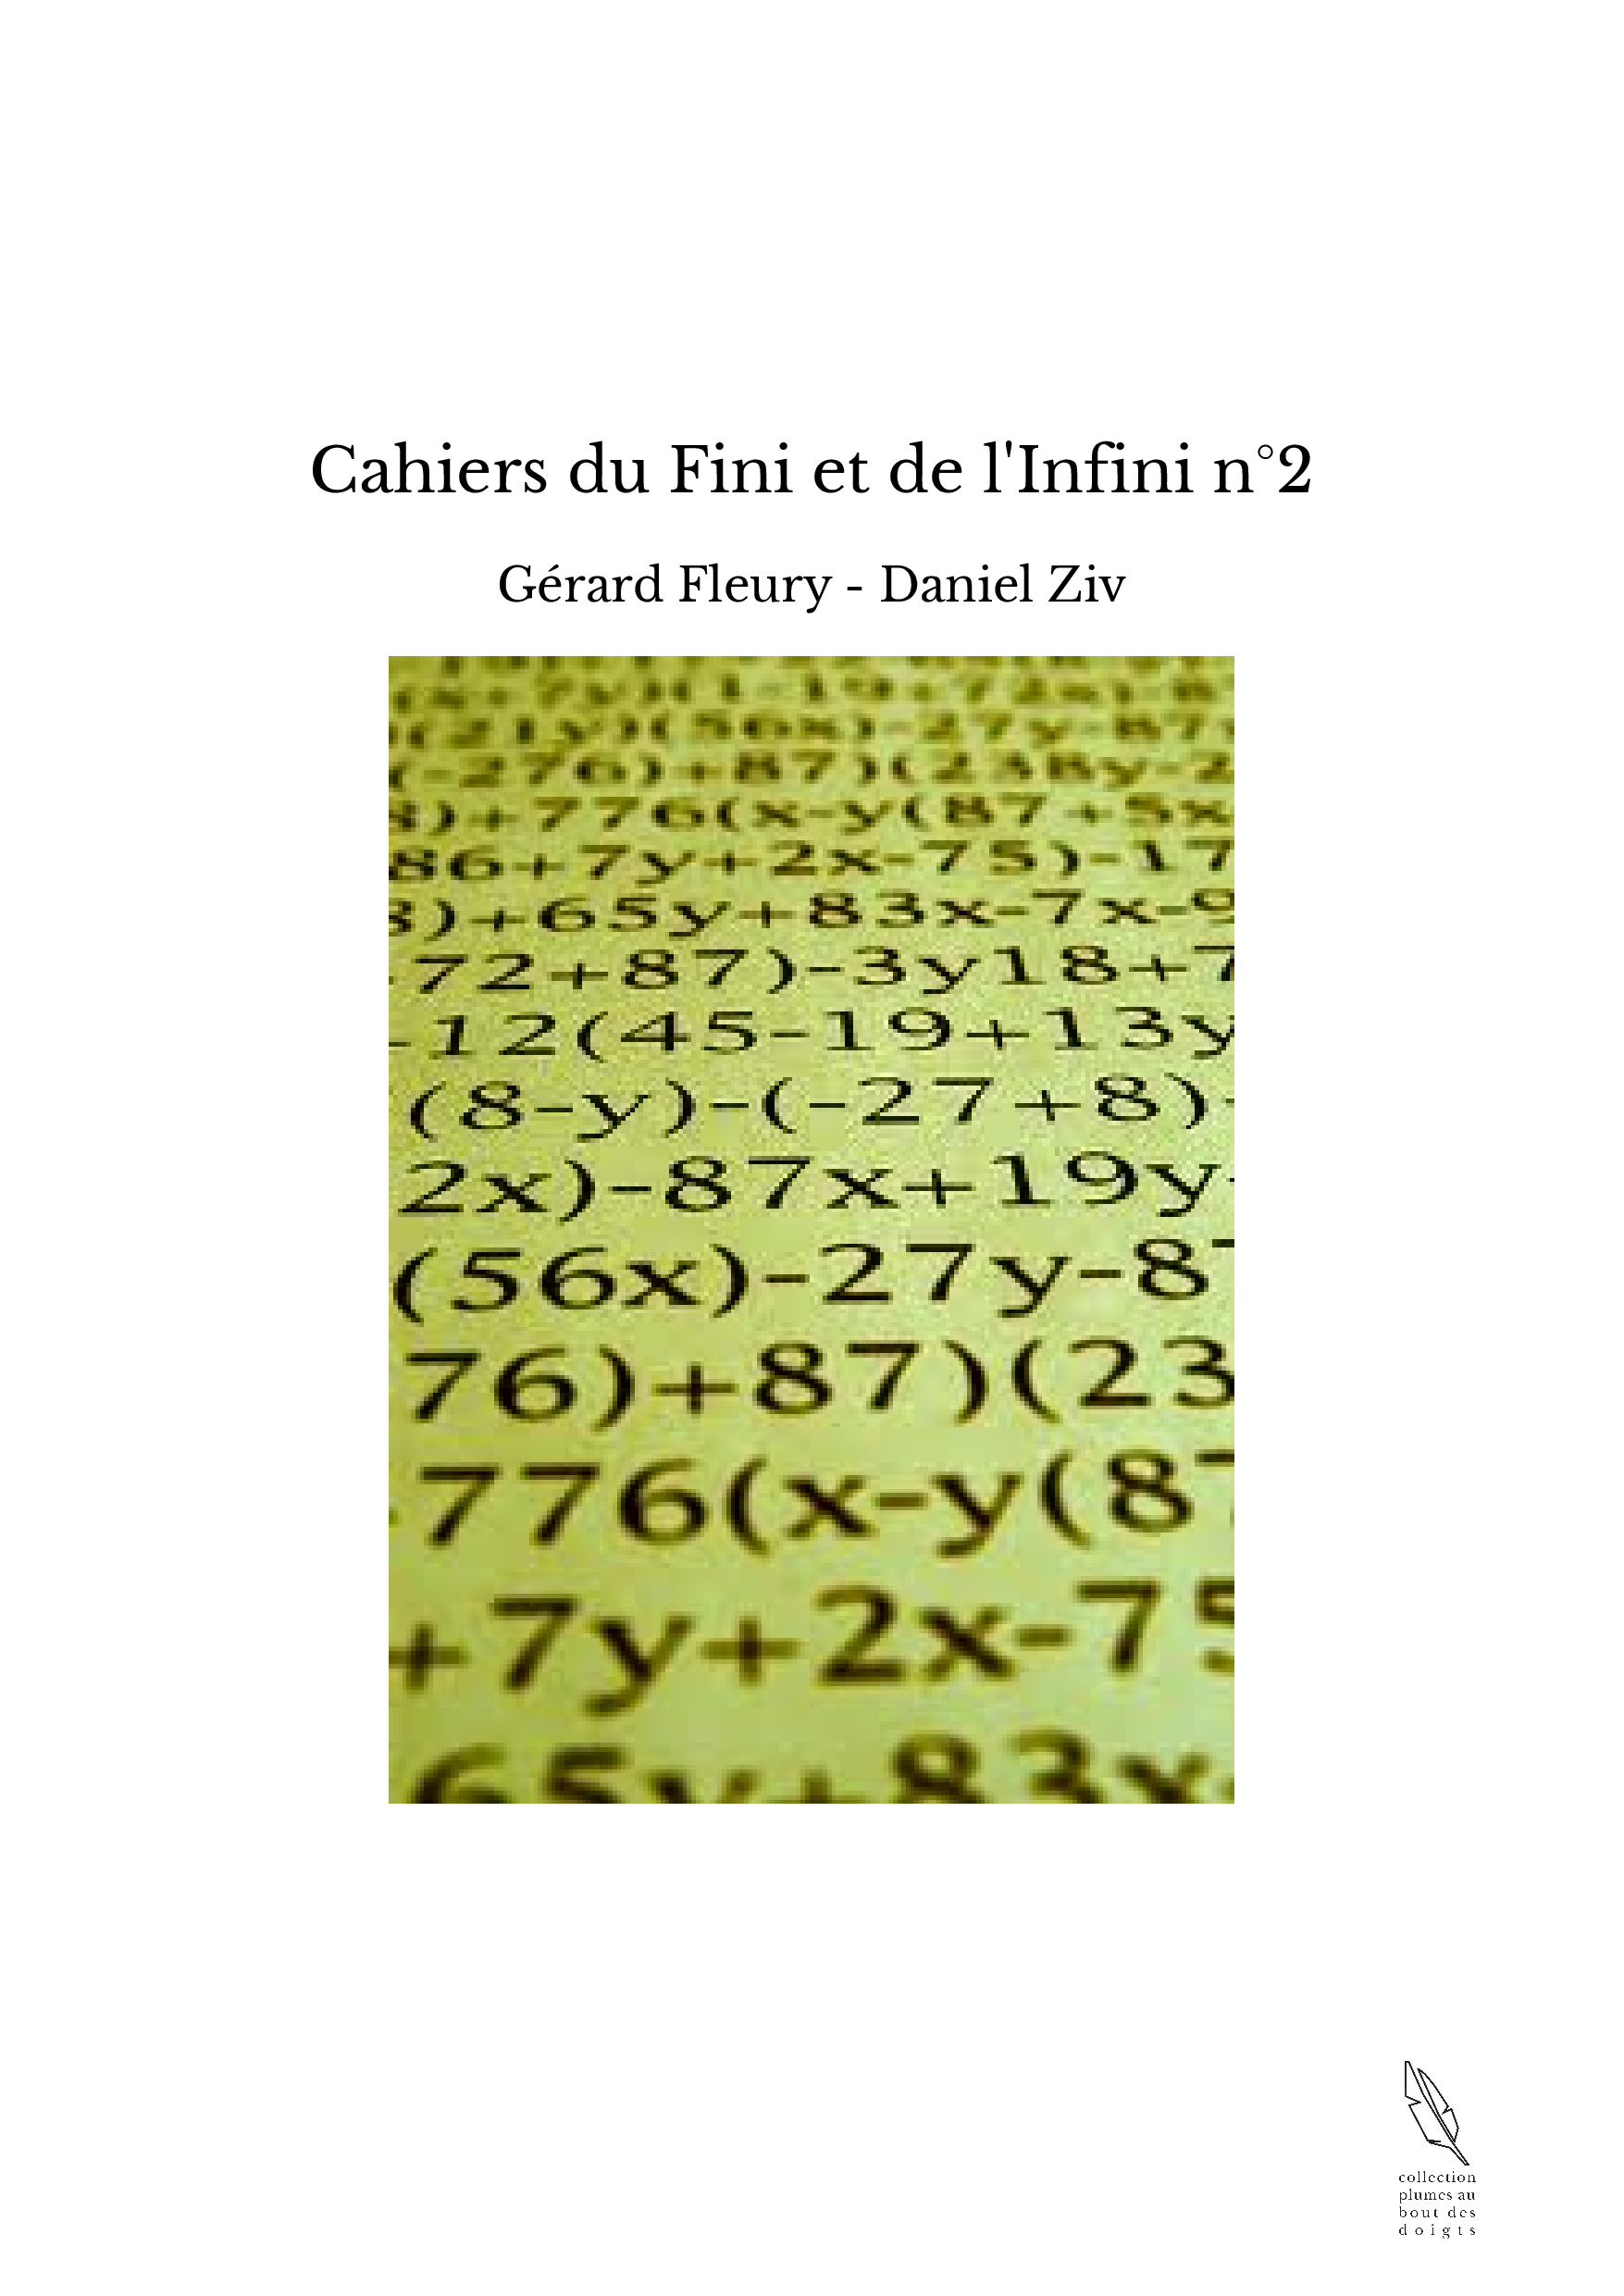 Cahiers du Fini et de l'Infini n°2